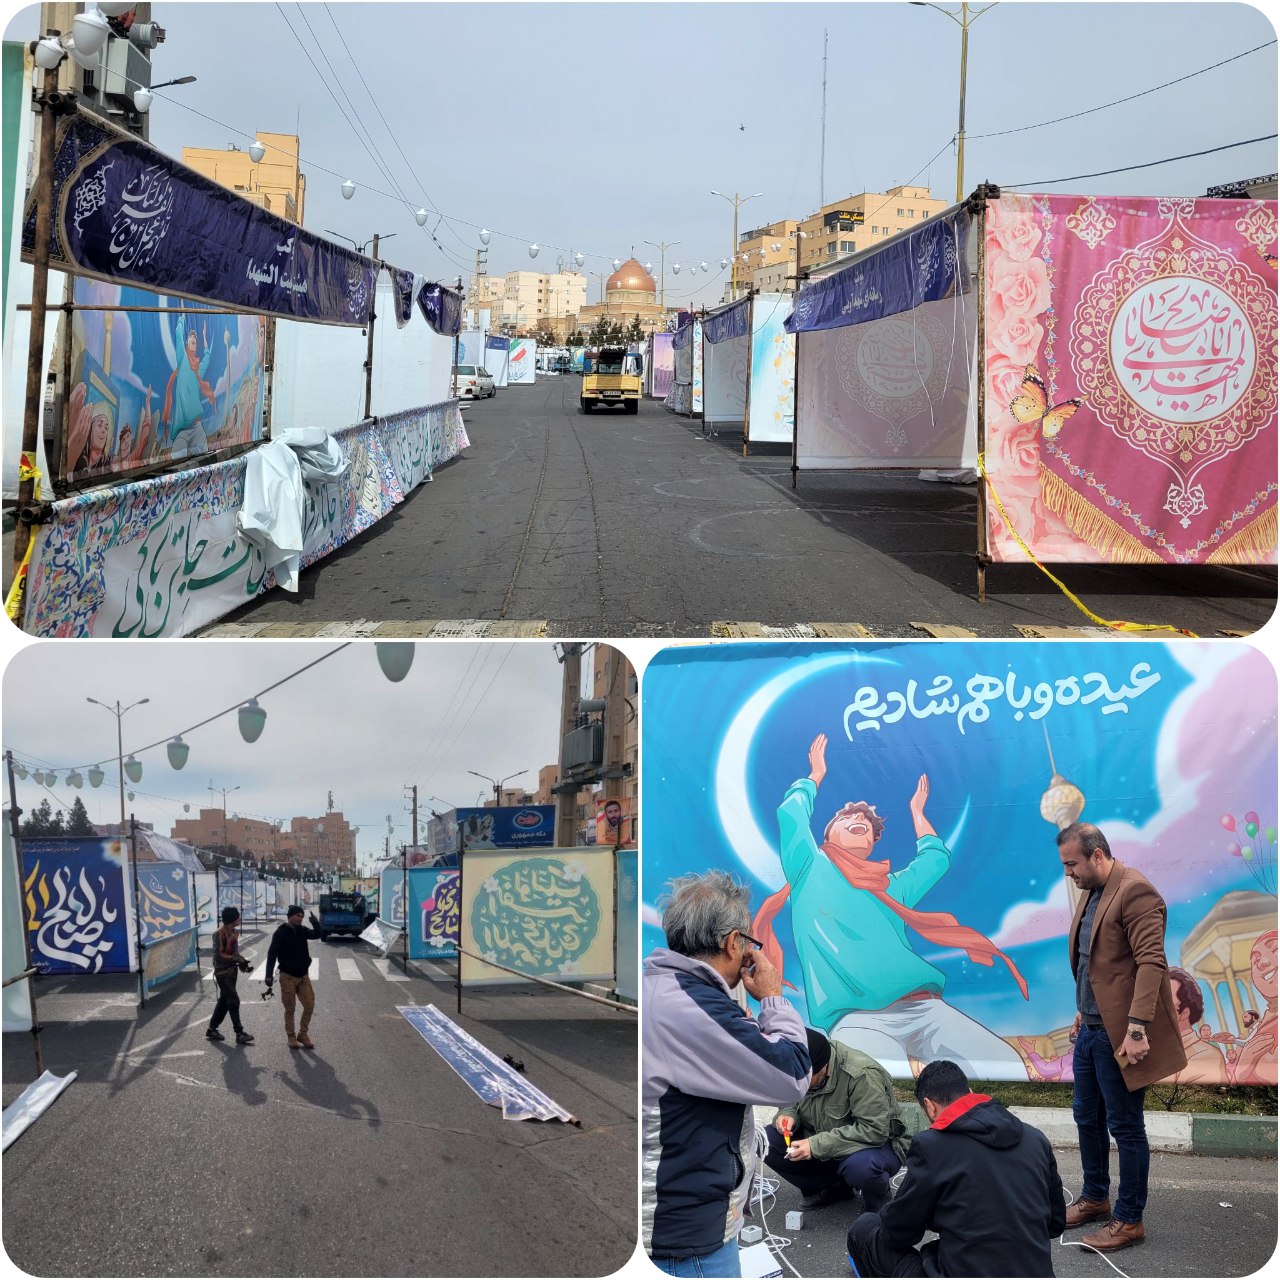  آماده سازی محل برگزاری "جشن بزرگ خیابانی و مهمانی کیلومتری منجی" در شهر پرند